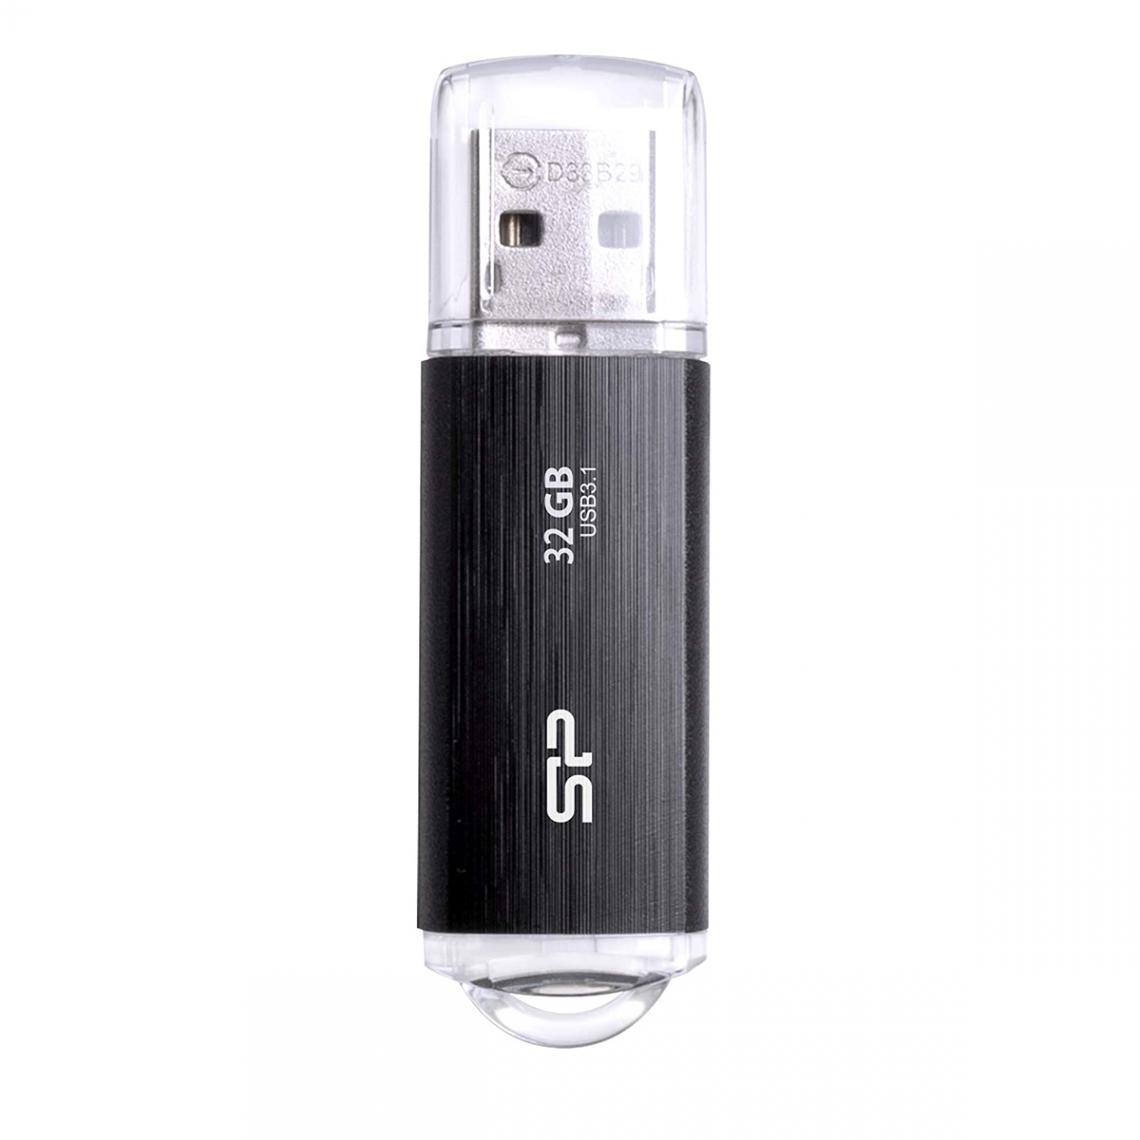 Silicon power - B02 32 Go - Noir - Clés USB